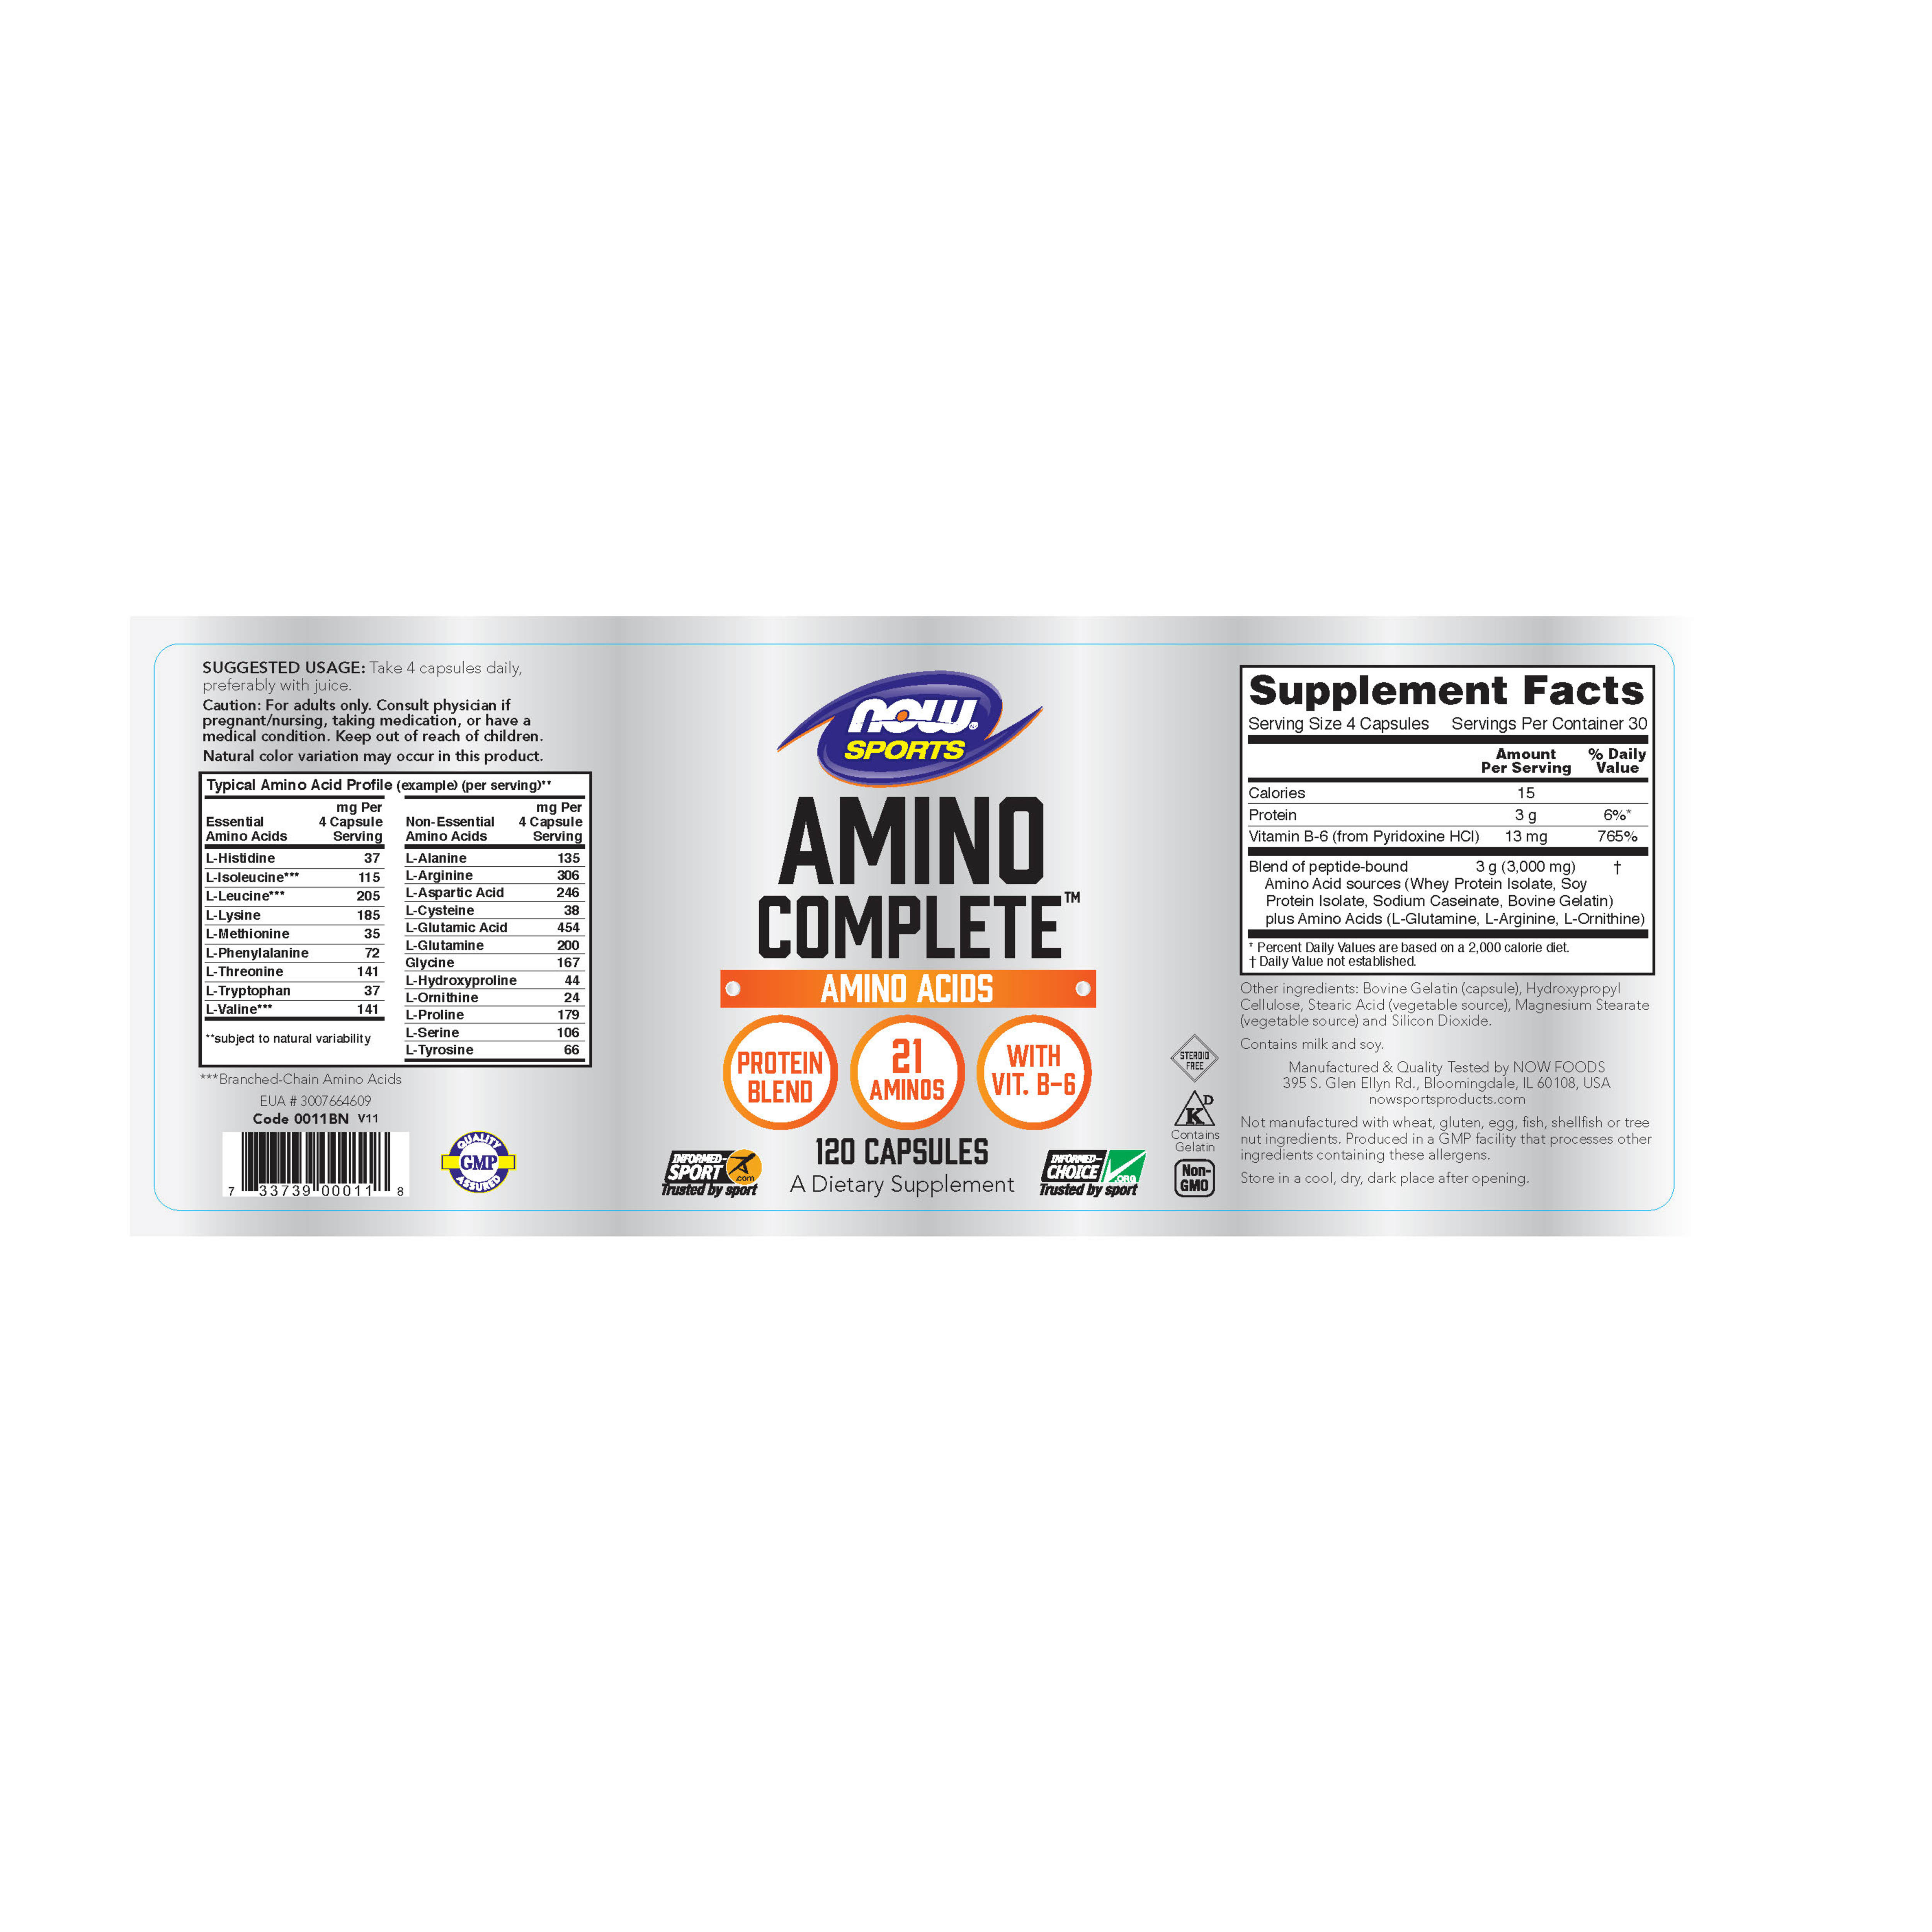 Thực phẩm bảo vệ sức khỏe Amino CompleteTM hãng Now foods Mỹ giúp bổ sung các axit amin cần thiết cho cơ thể